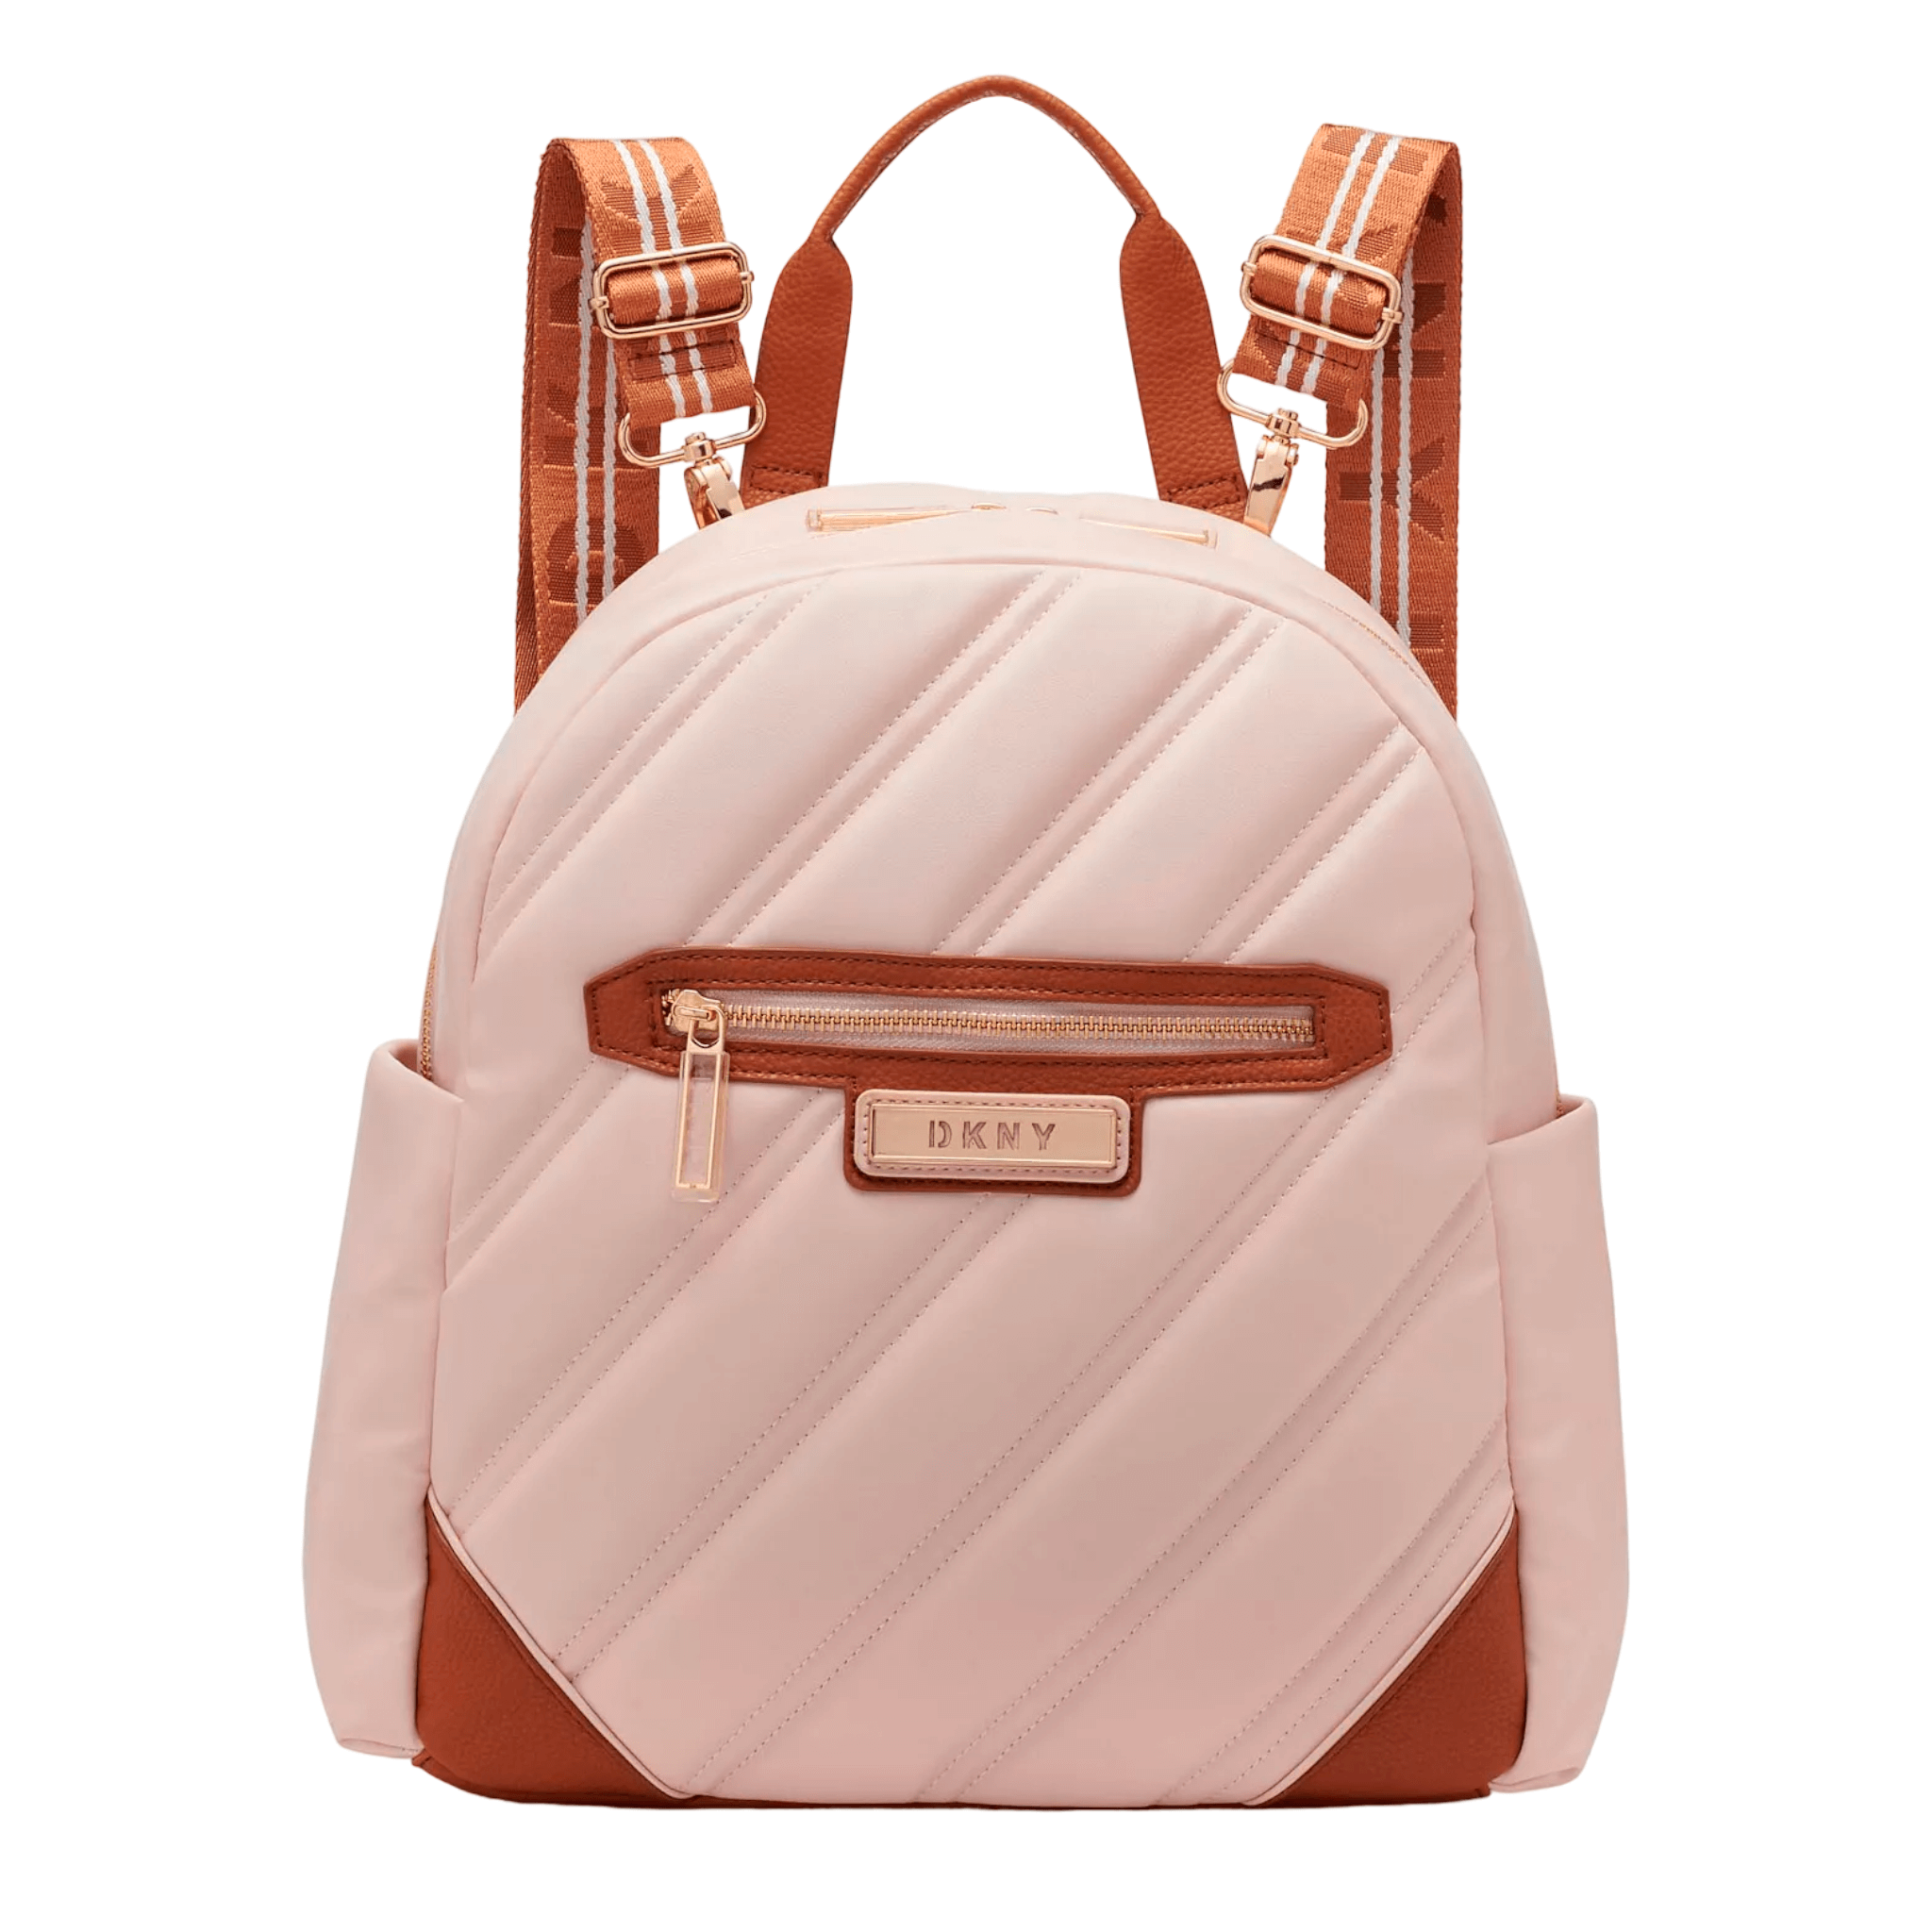 Рюкзак Dkny Bias 15 Carry-On, белдно-розовый/коричневый